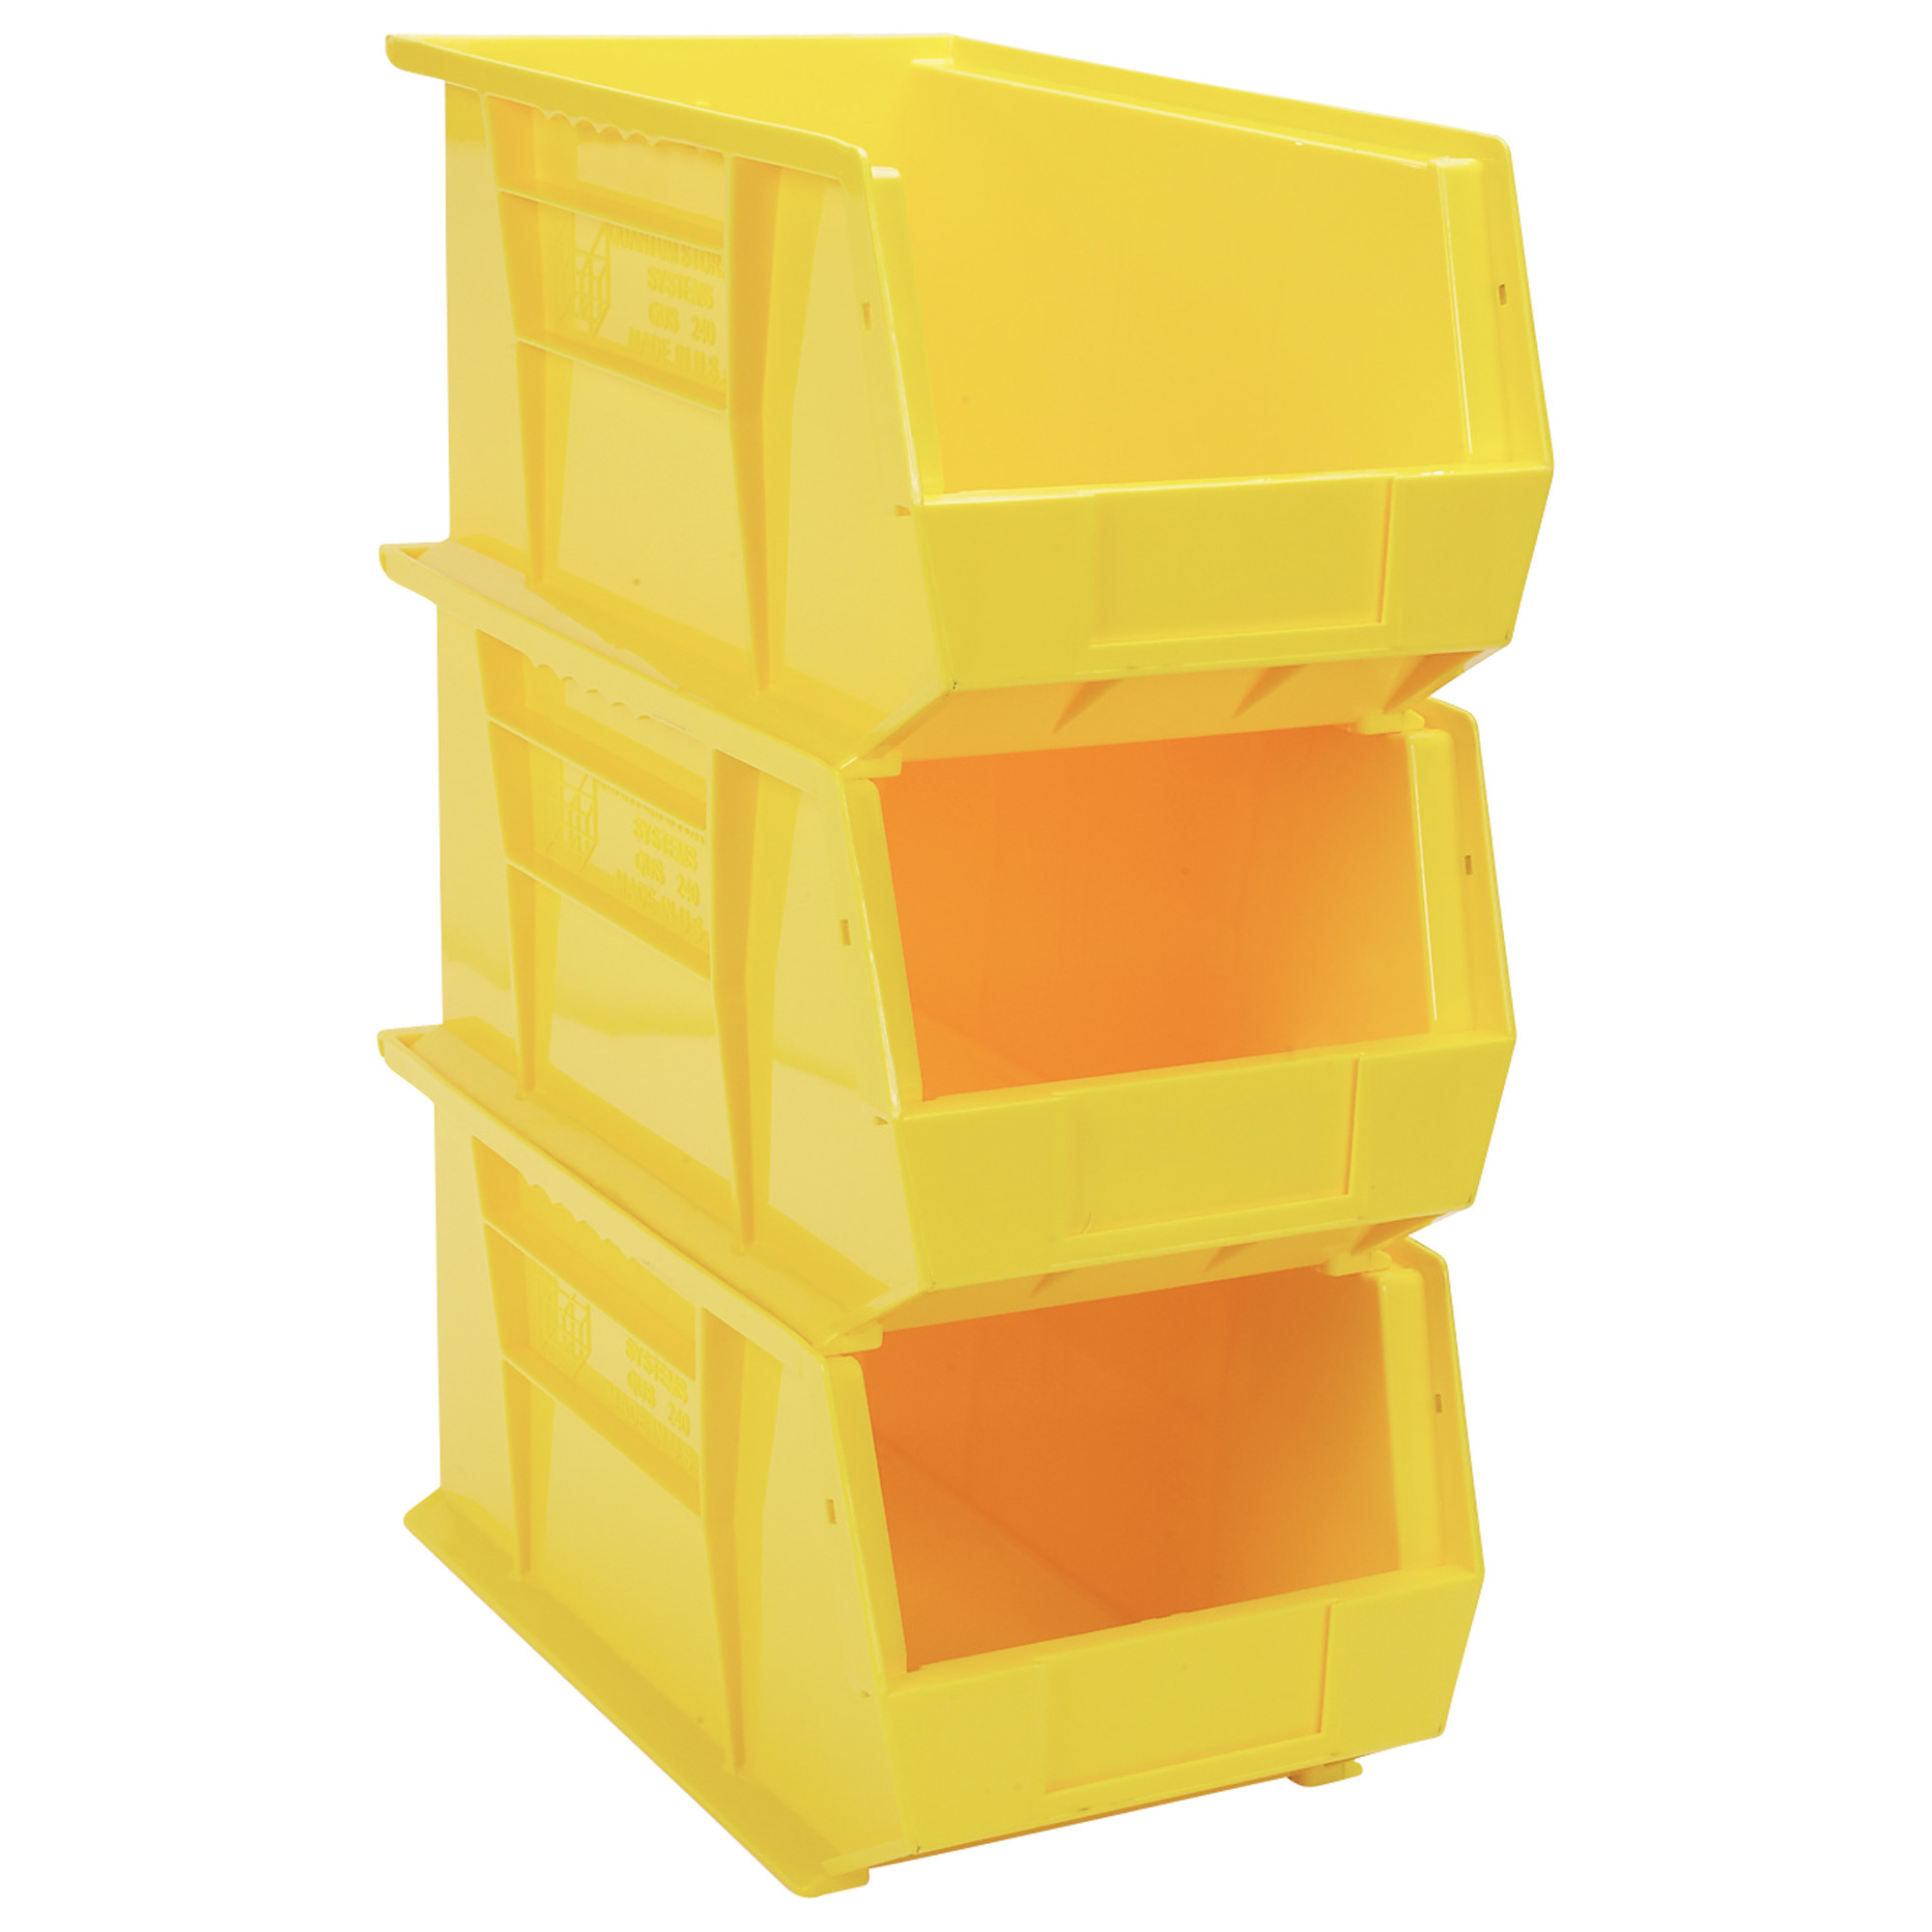 Quantum Heavy-Duty Storage Bins, 3-Pack, Yellow, 14 3/4Inch L x 8 1/4Inch W x 7Inch H Bin Size, Model NTE-RQUS240YL